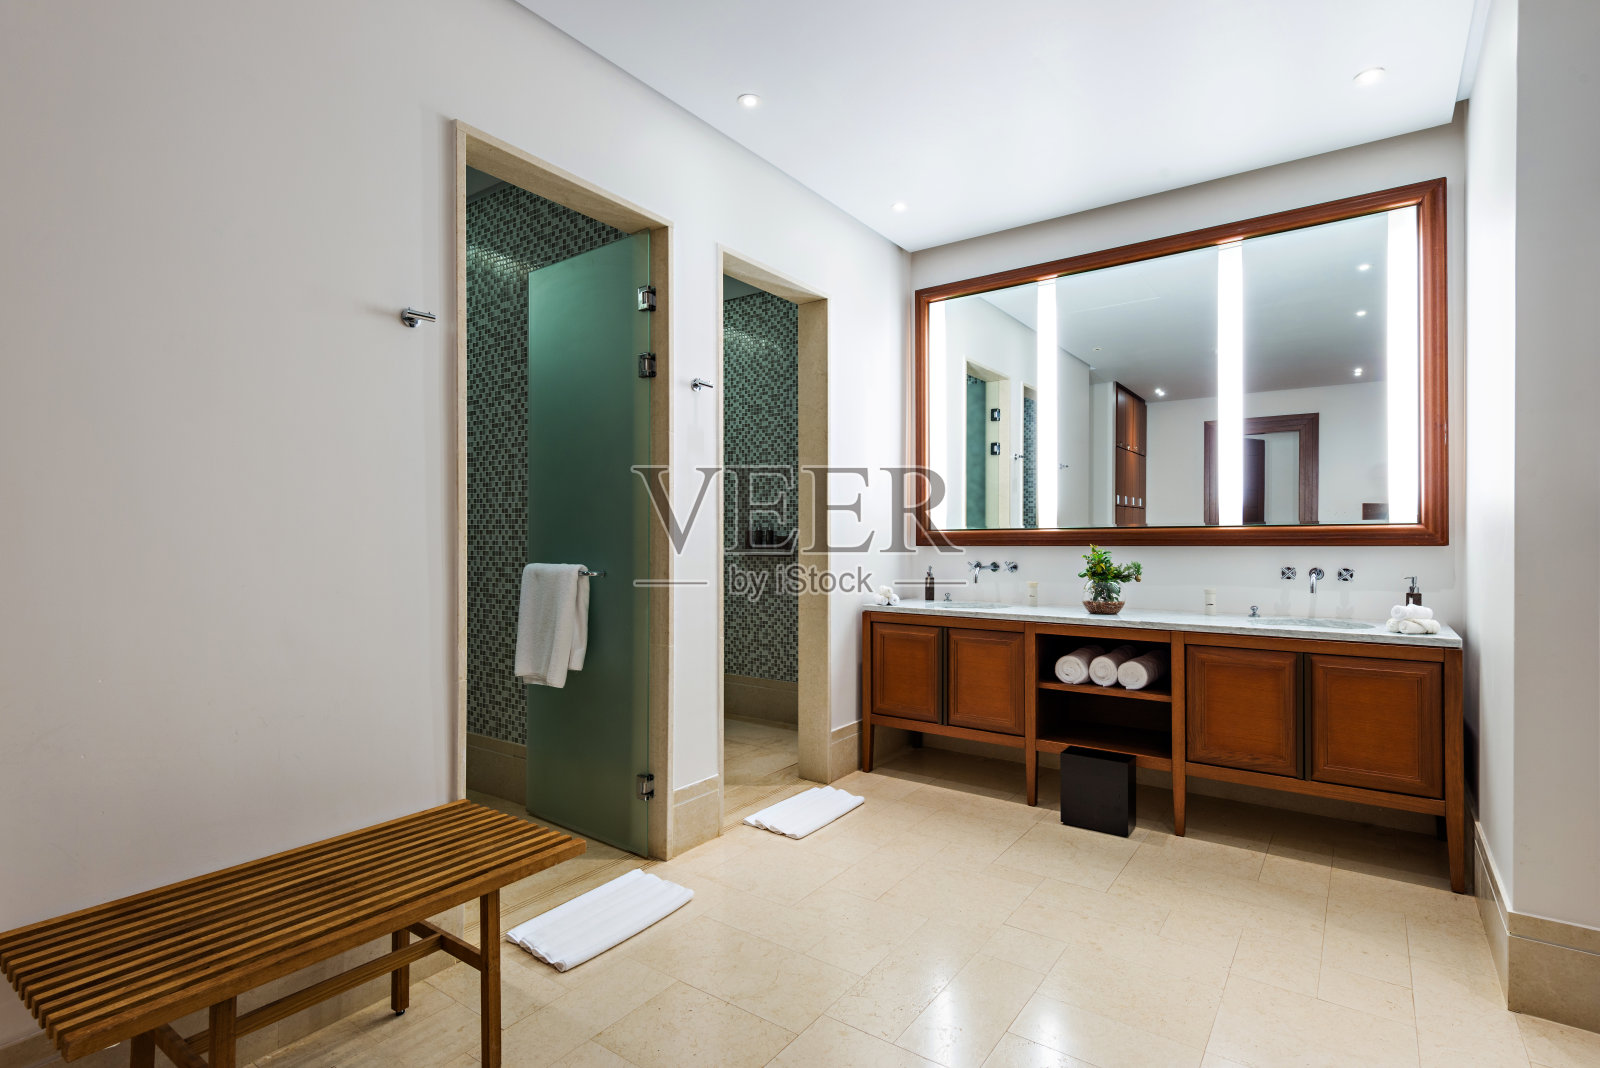 豪华酒店里漂亮的大浴室照片摄影图片